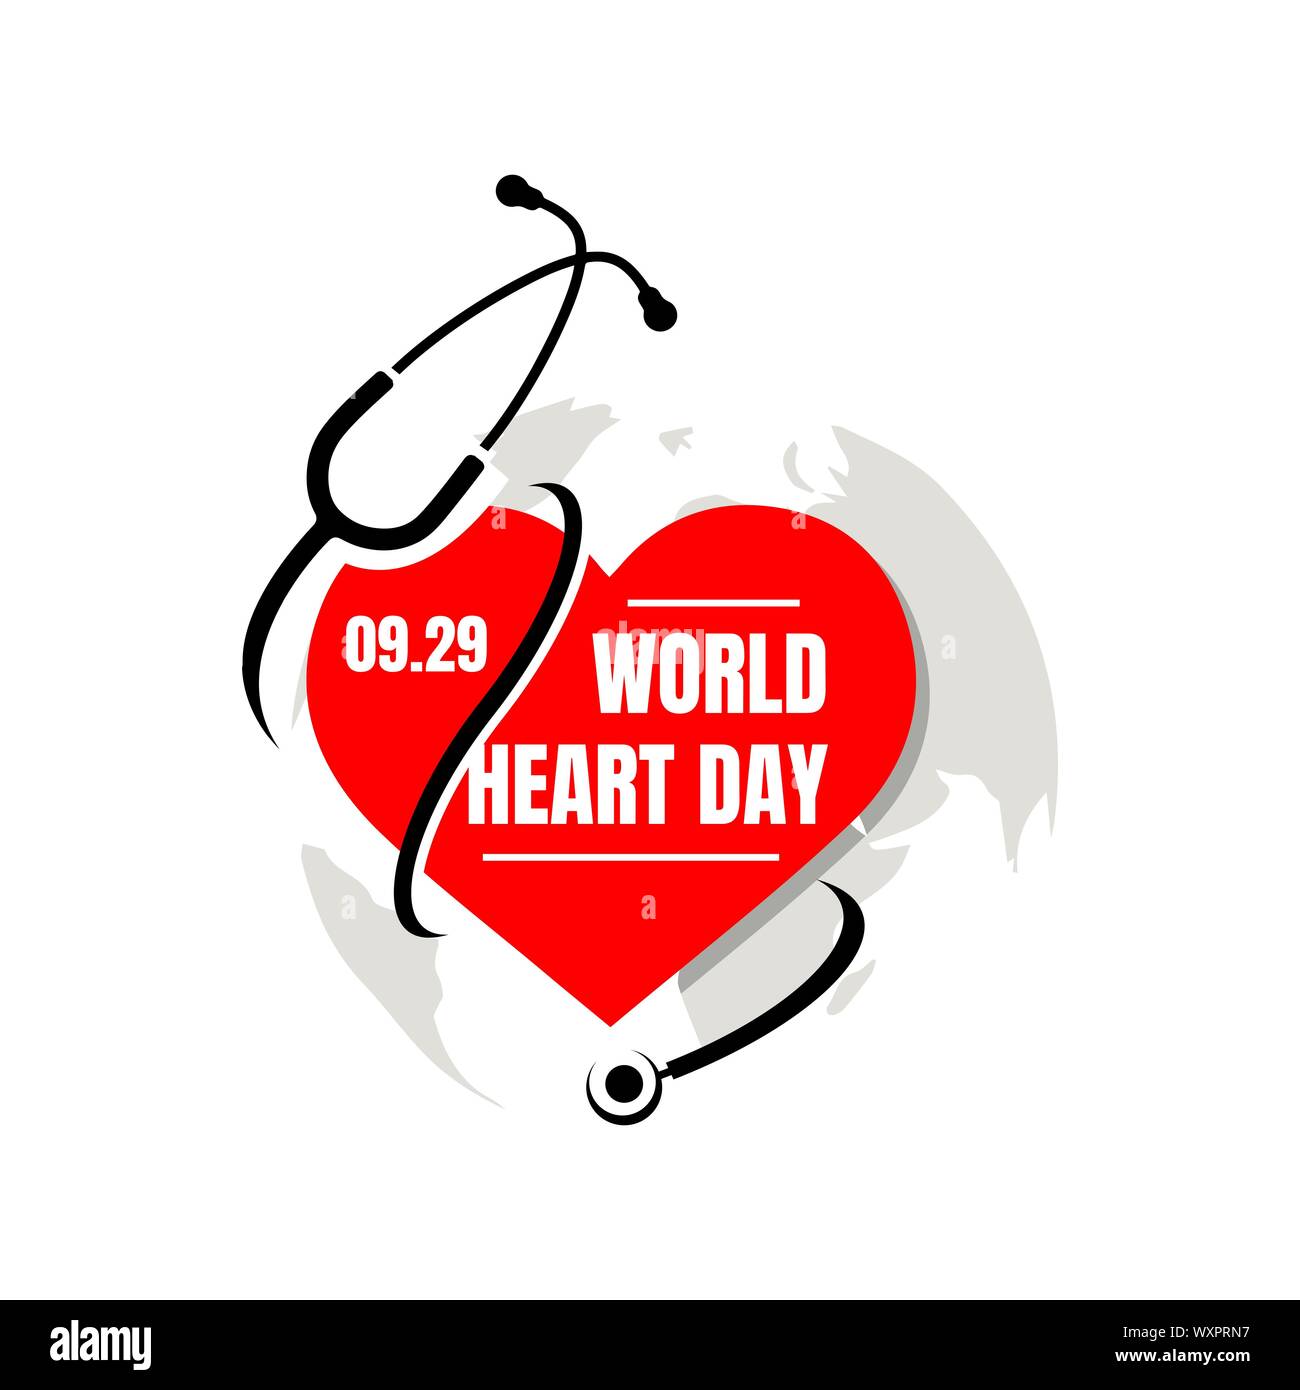 World Heart Day Vector Illustration einen Hintergrund mit Bild von Stethoskop, das Herz und die Welt Karte Stock Vektor